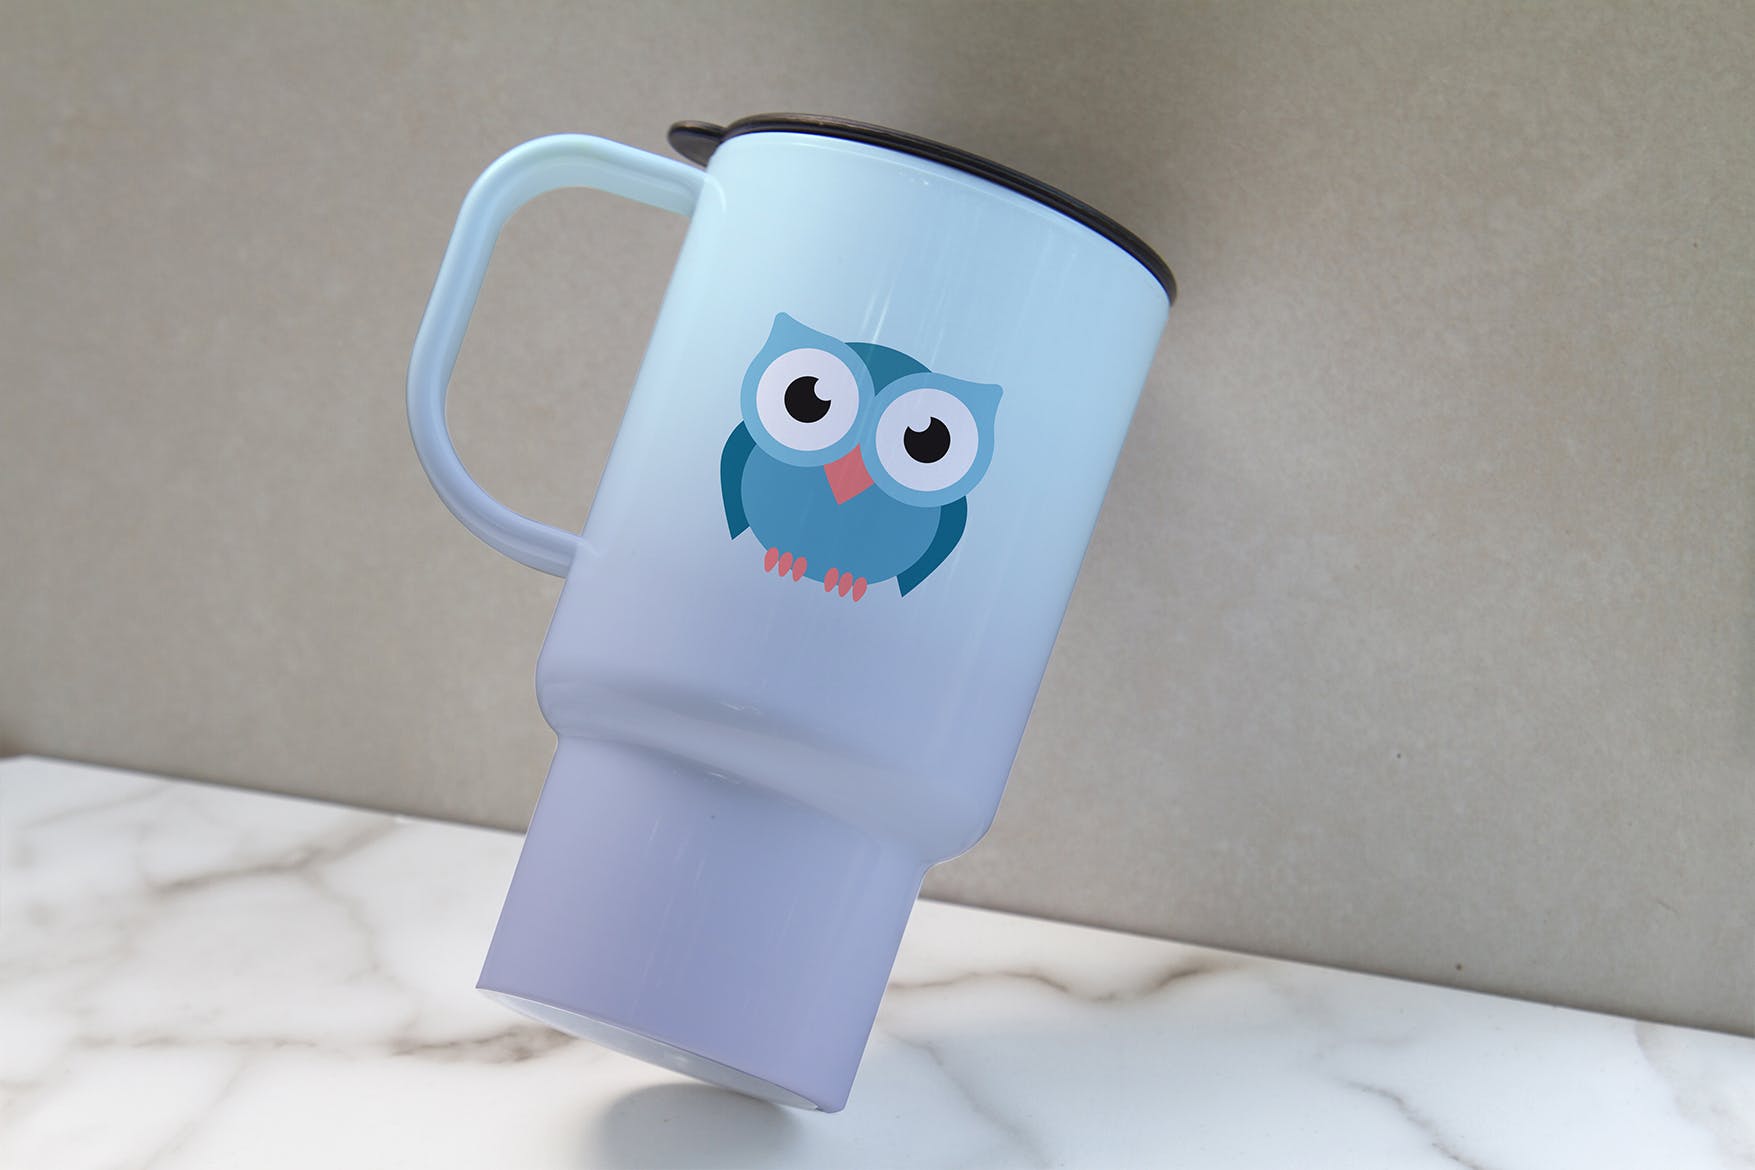 便携式杯子图案设计预览素材中国精选 Portable Cup Mockup插图(2)